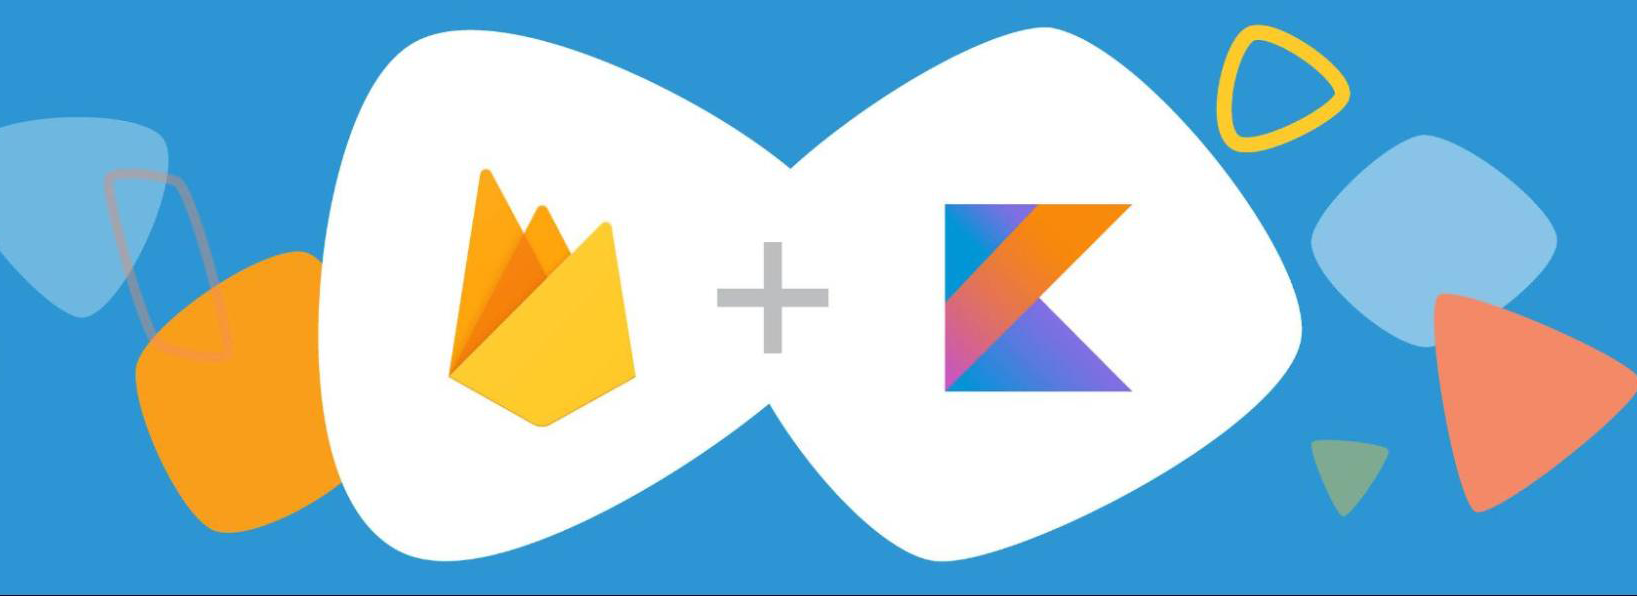 Firebase 및 Kotlin 로고